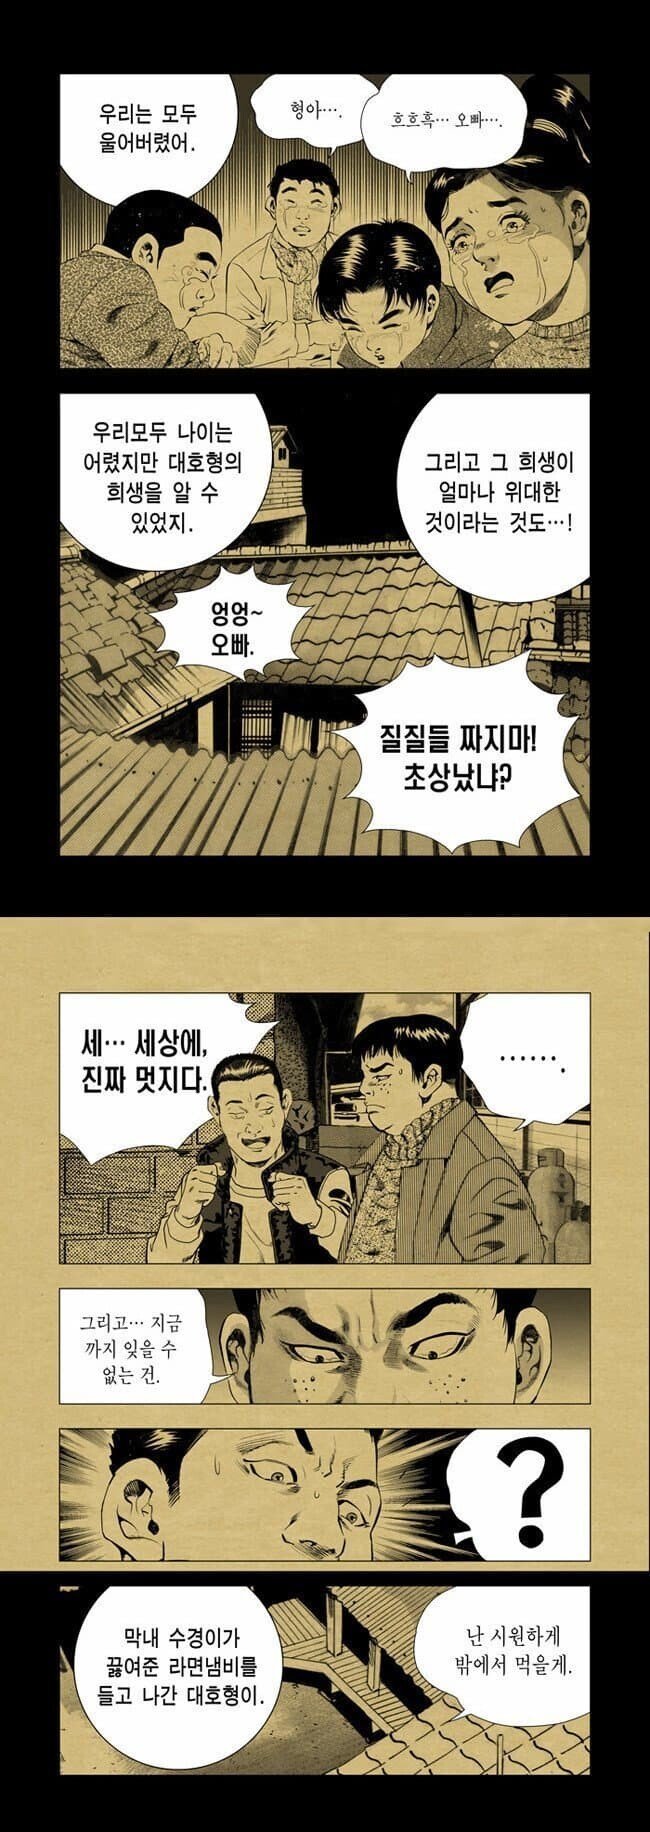 1647916865 (2).jpg 만신 김성모 ㄹㅇ 실화 기반 만화...jpg